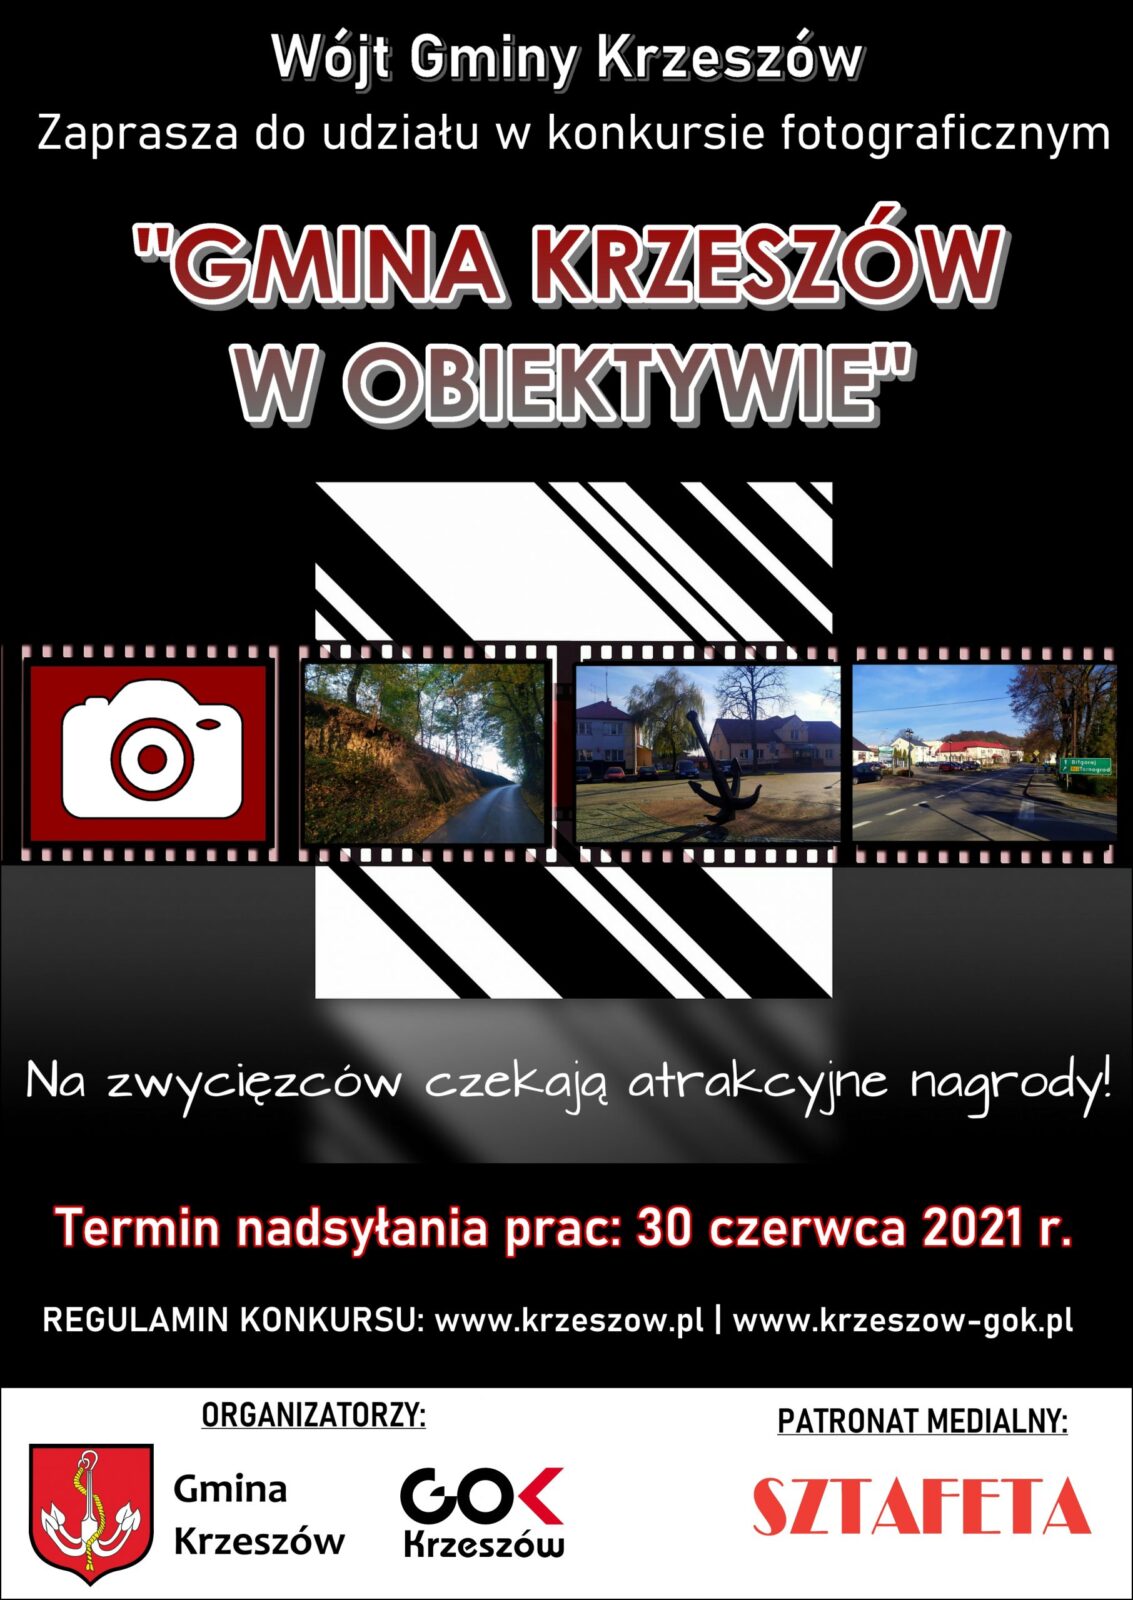 Konkurs fotograficzny “Gmina Krzeszów w obiektywie”